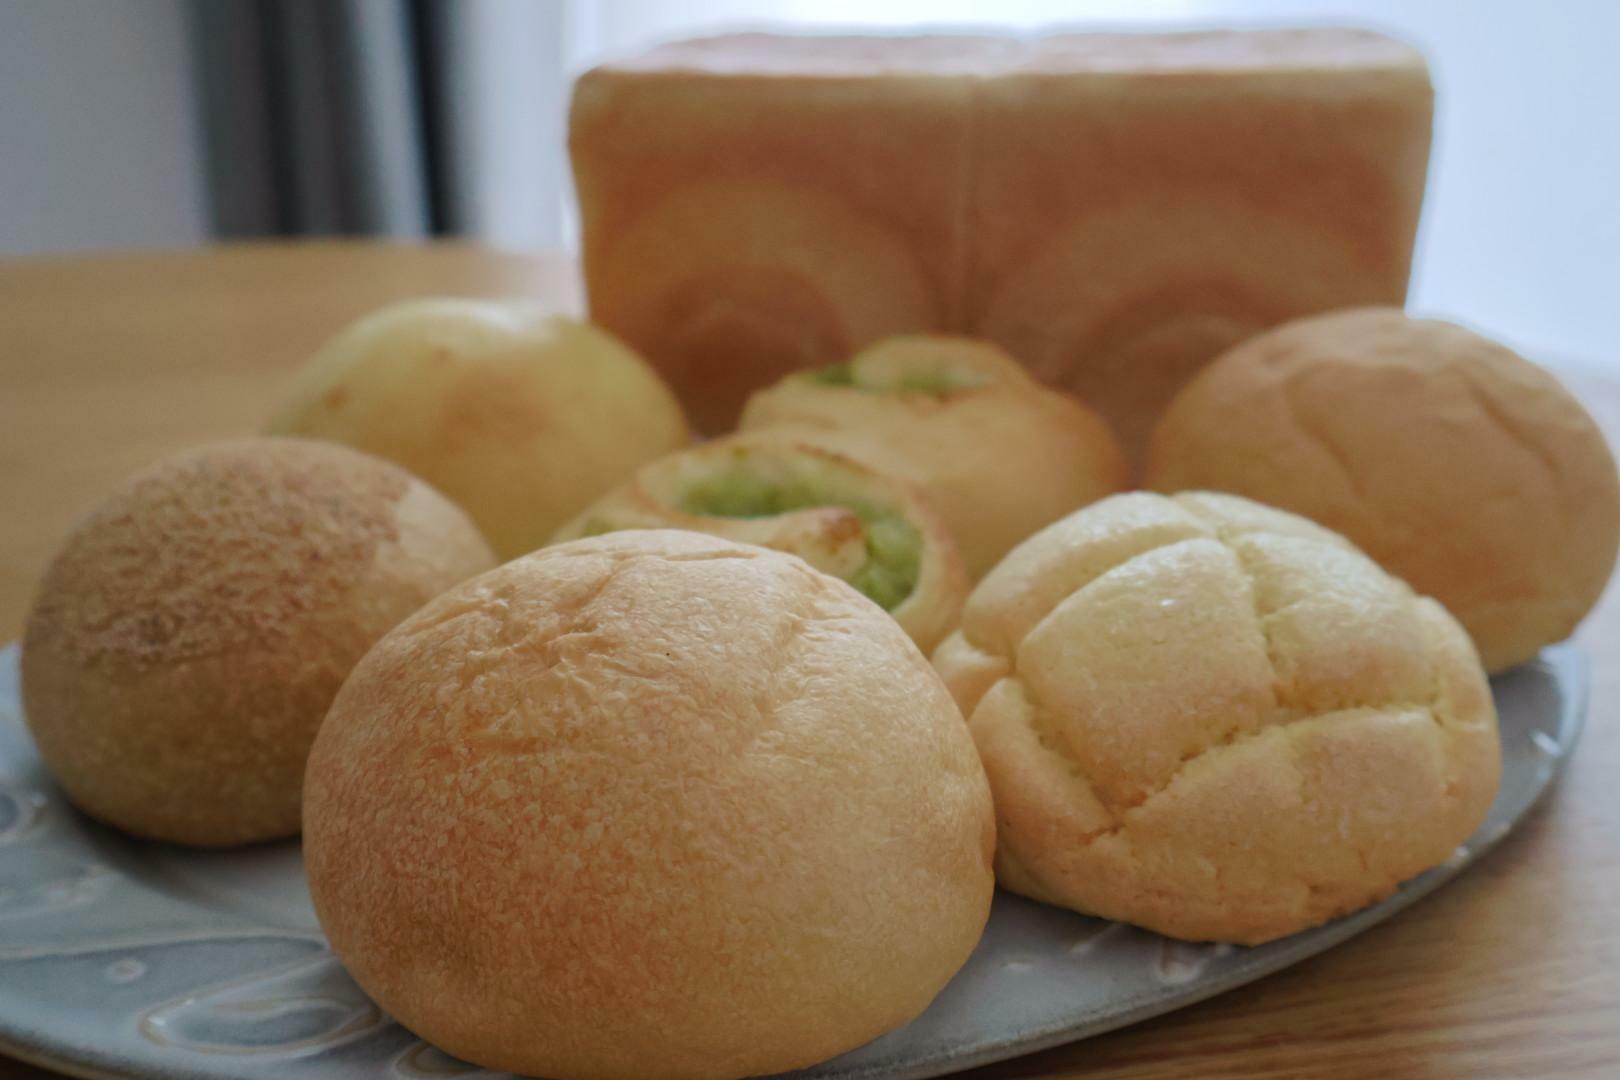 コロコロとした丸パンが並ぶとかわいいです